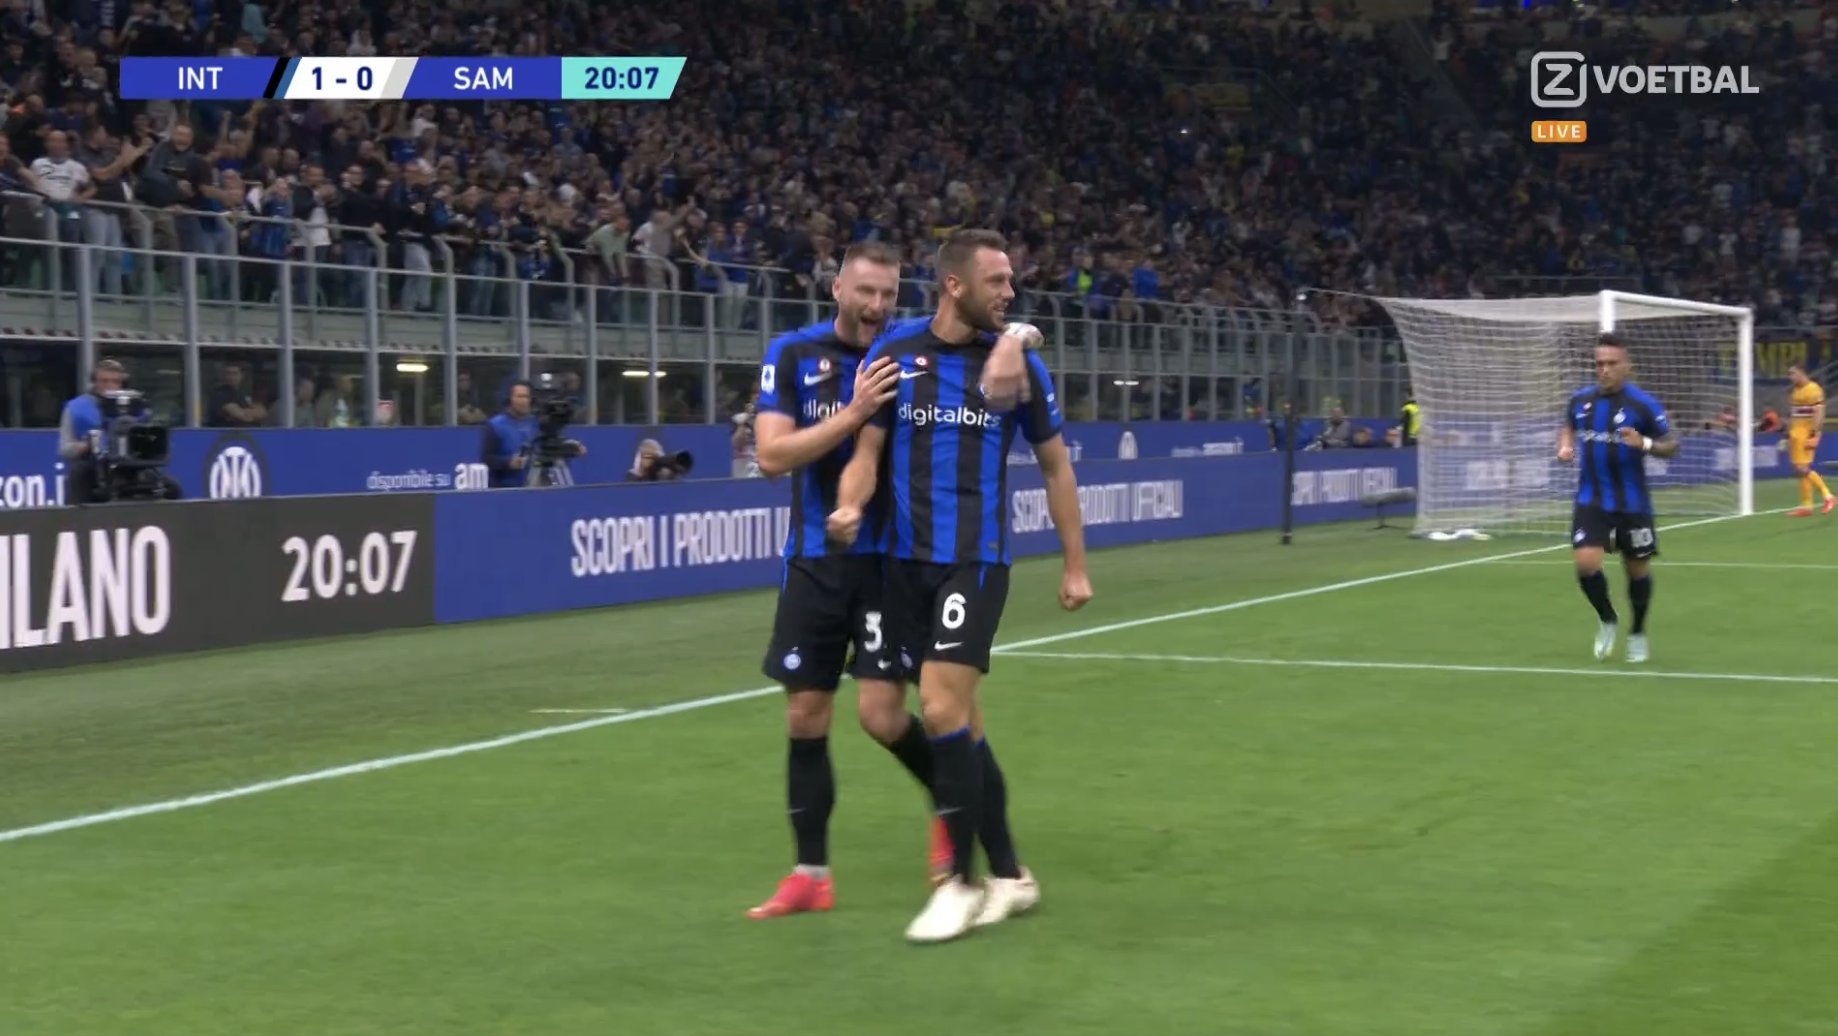 Sur coup de tête magique, De Vrij lance le compteur pour l’Inter contre Sampdoria (VIDÉO)